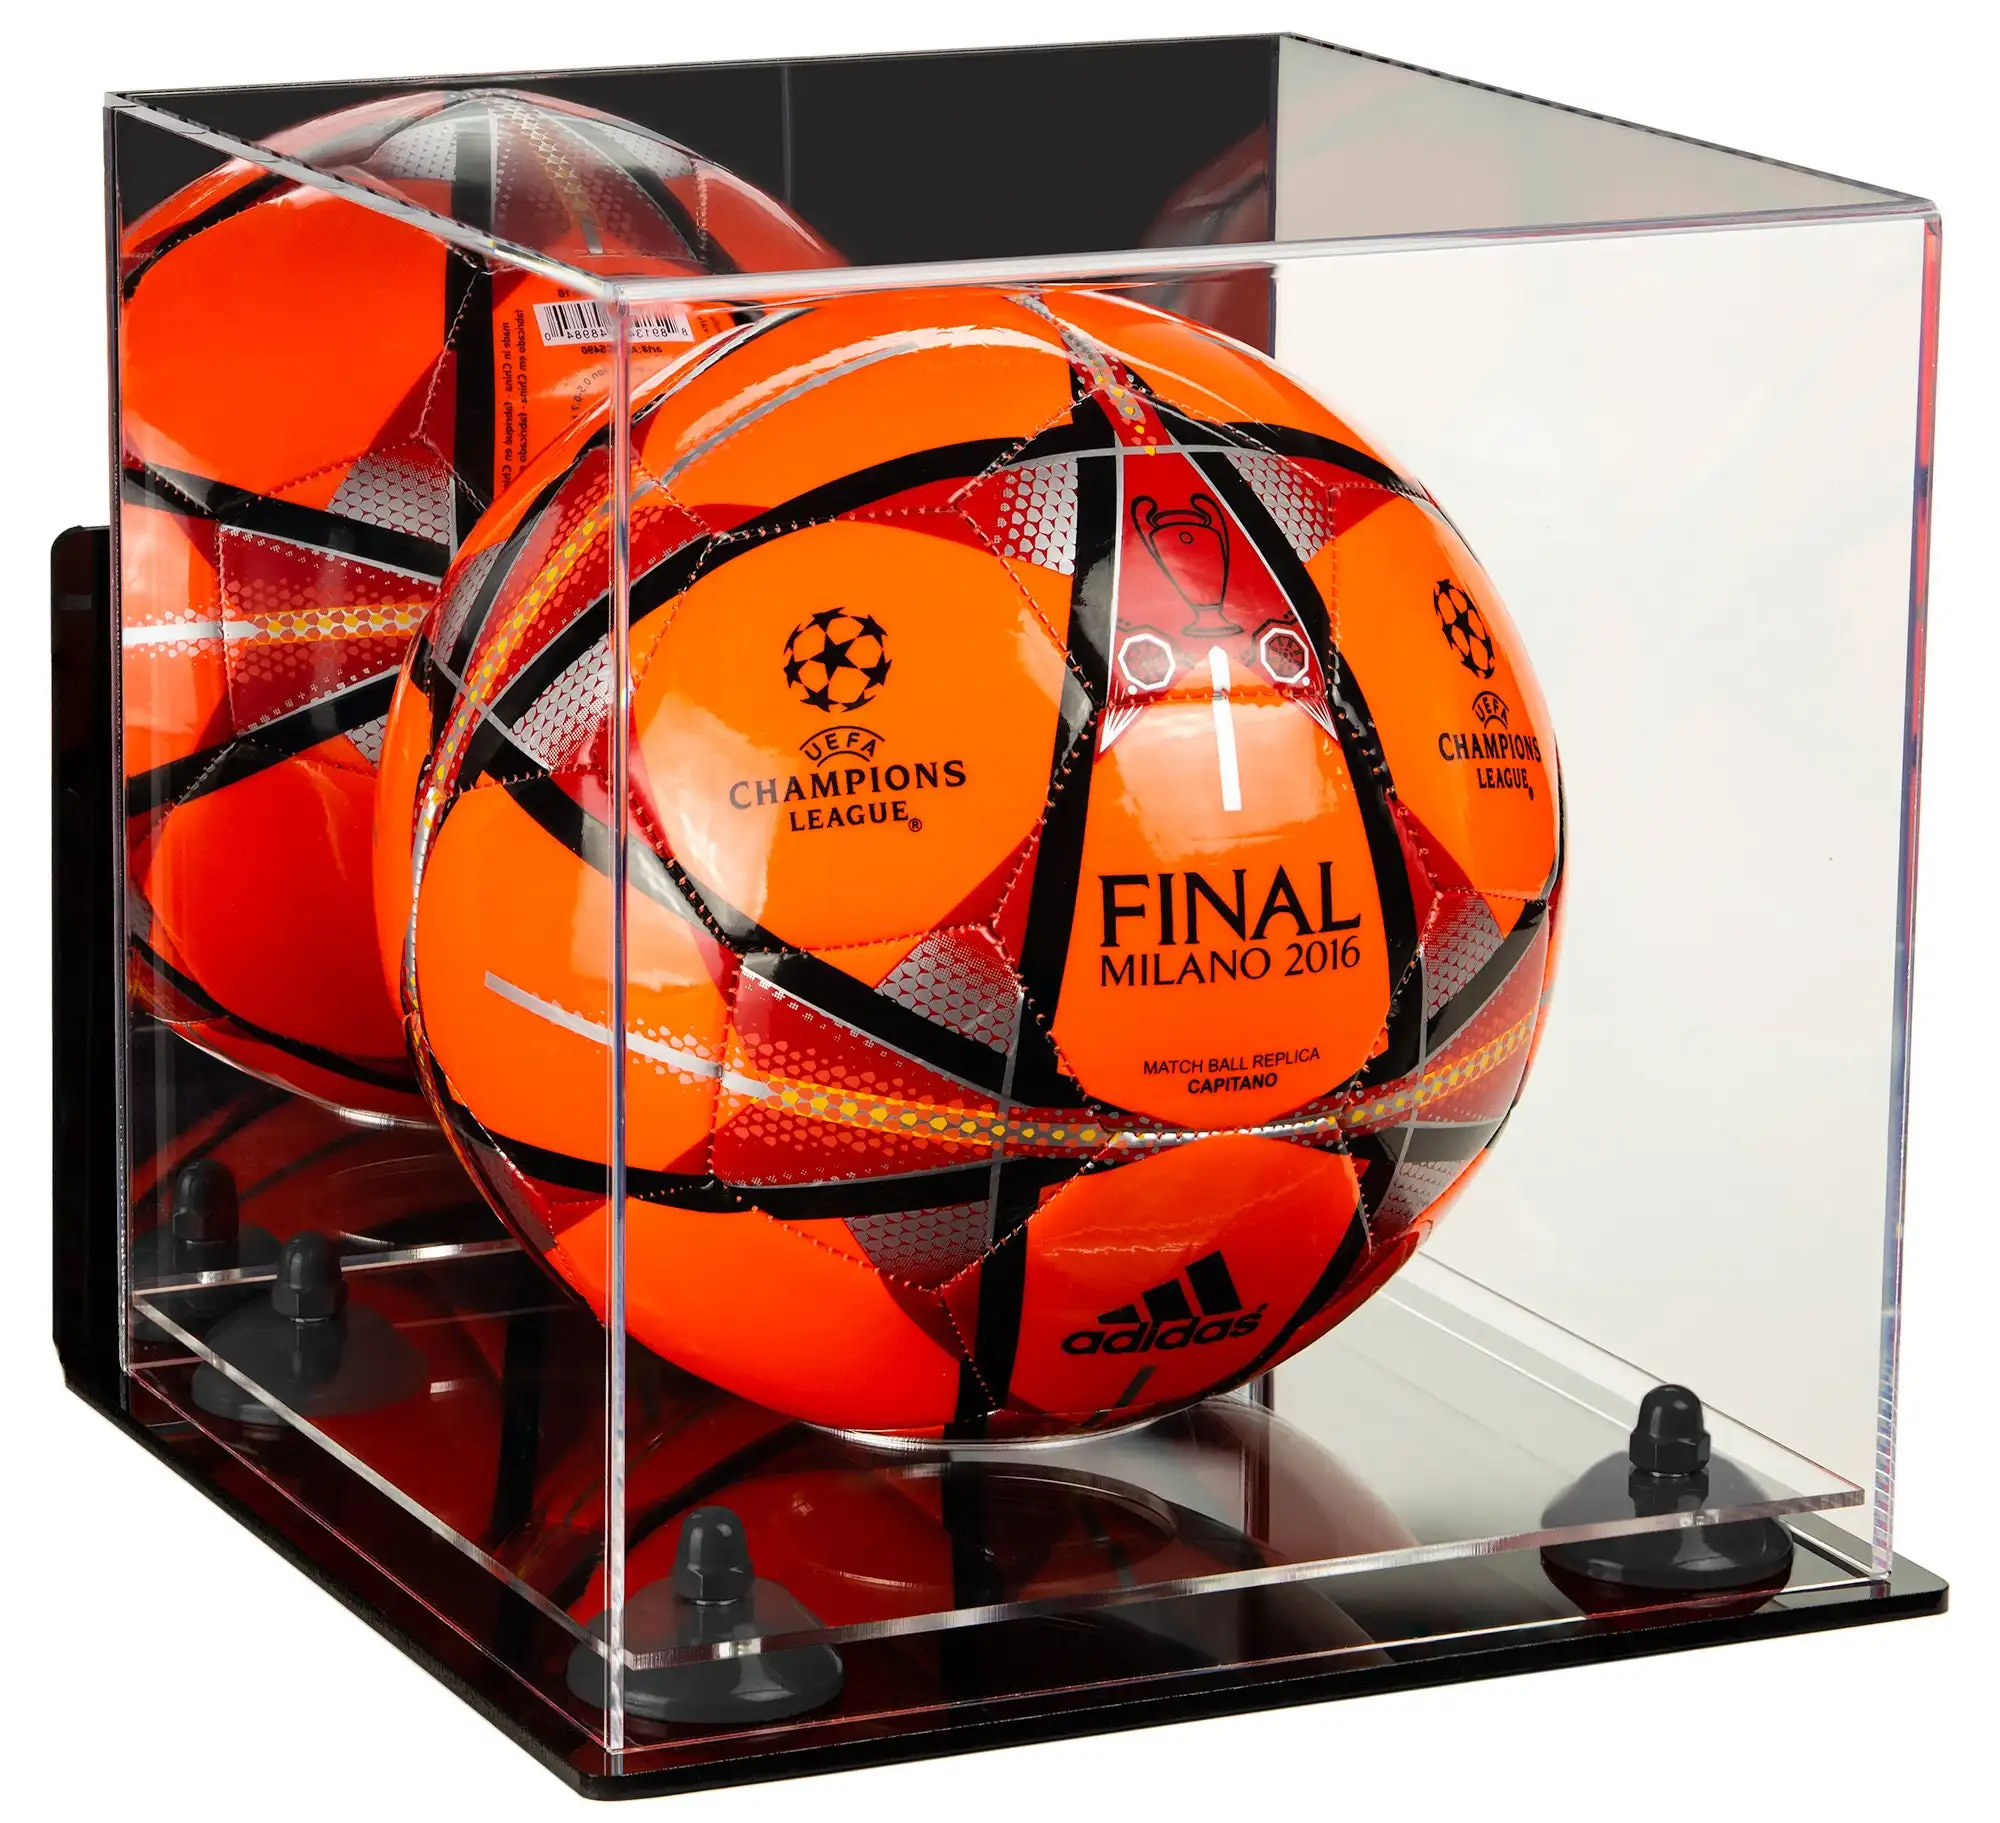 दीवार माउंट ऐक्रेलिक फुटबॉल गेंदें एकत्र करने योग्य प्रदर्शन केस मिरर बैक यादगार फुटबॉल धारक बॉक्स